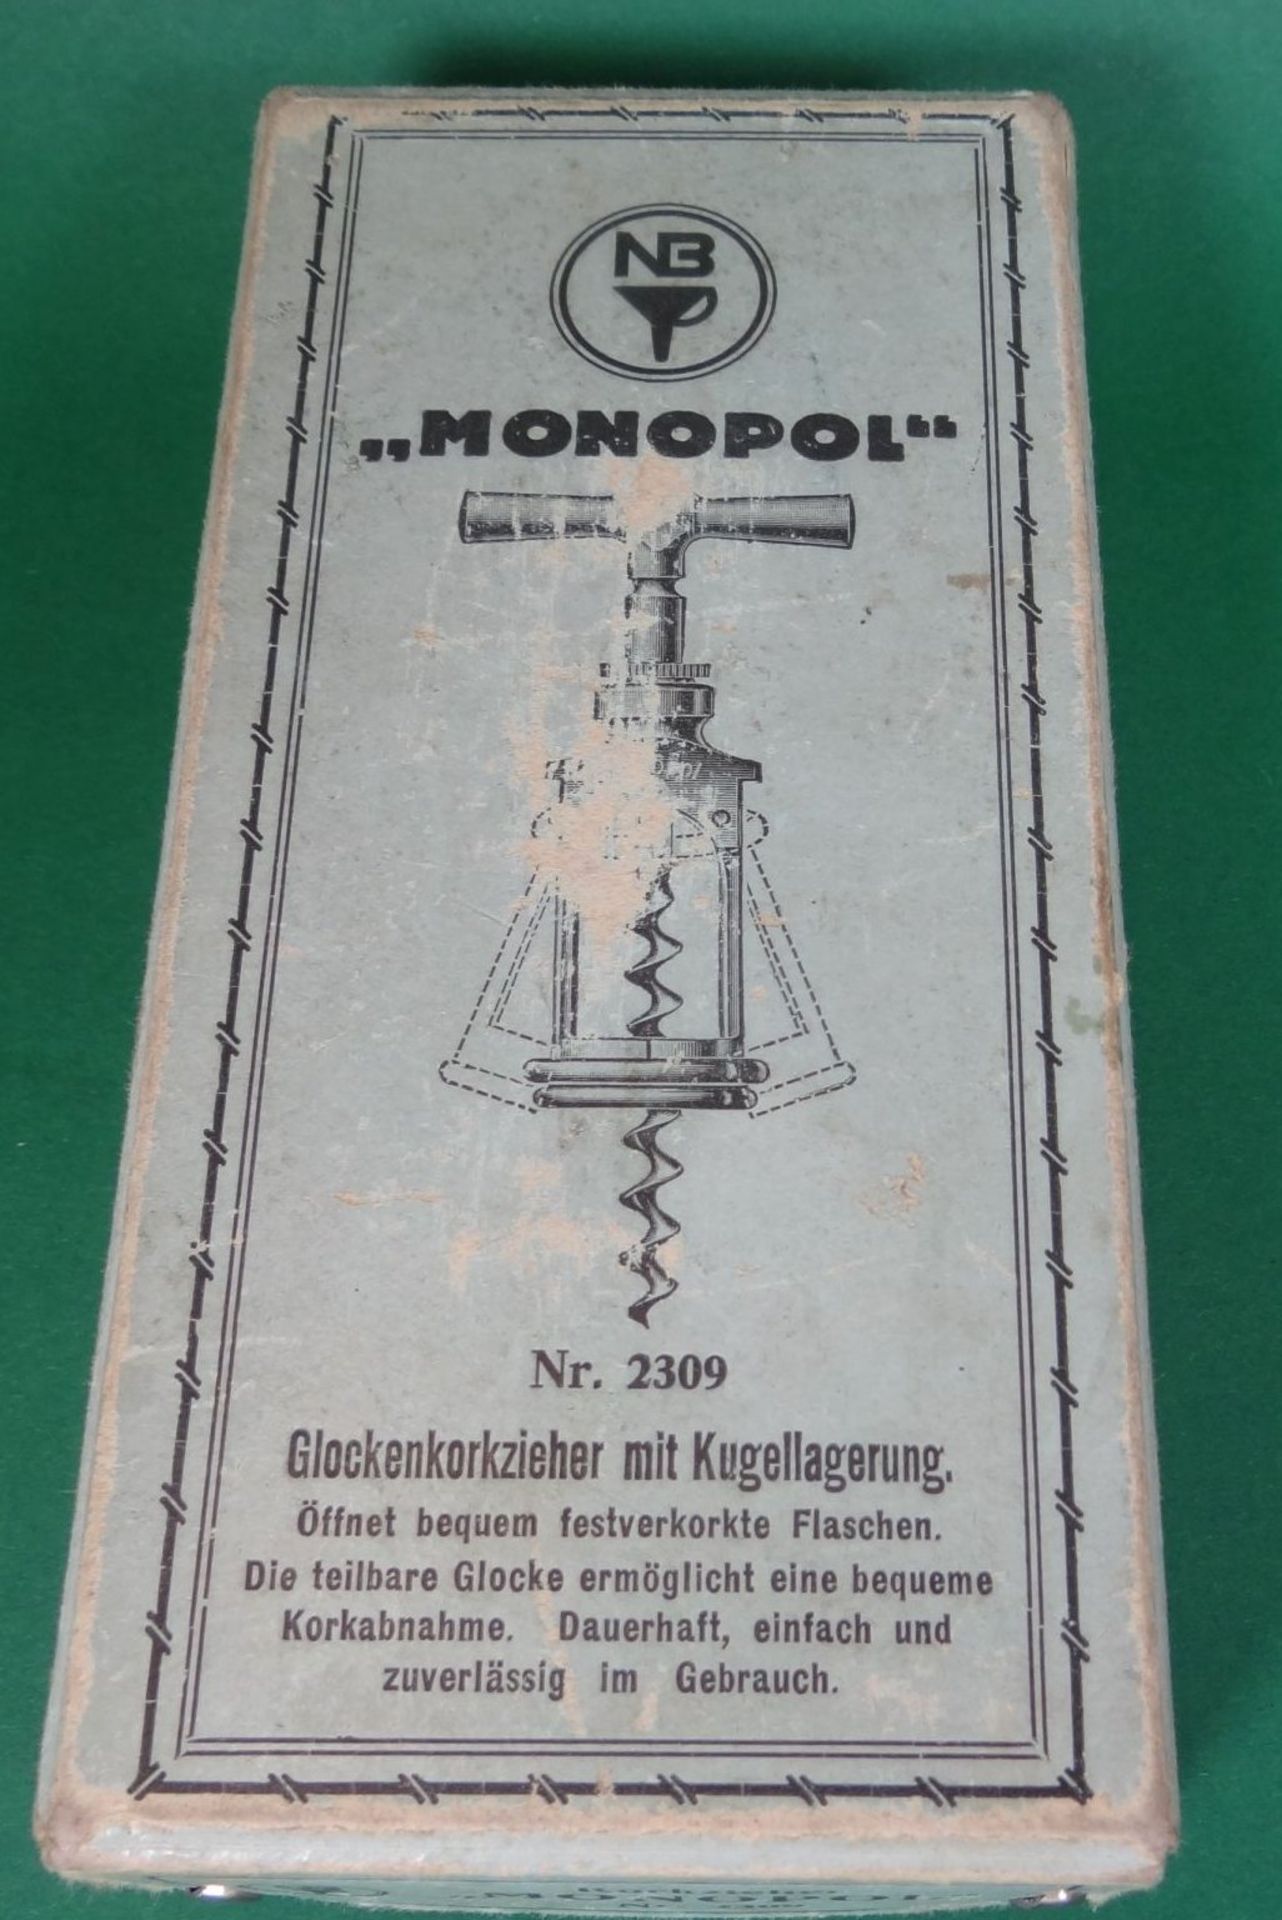 alter Korkzieher "Monopol" in orig. Karton, wohl 30-40-er Jahre, L-ca. 15 cm - Bild 2 aus 6